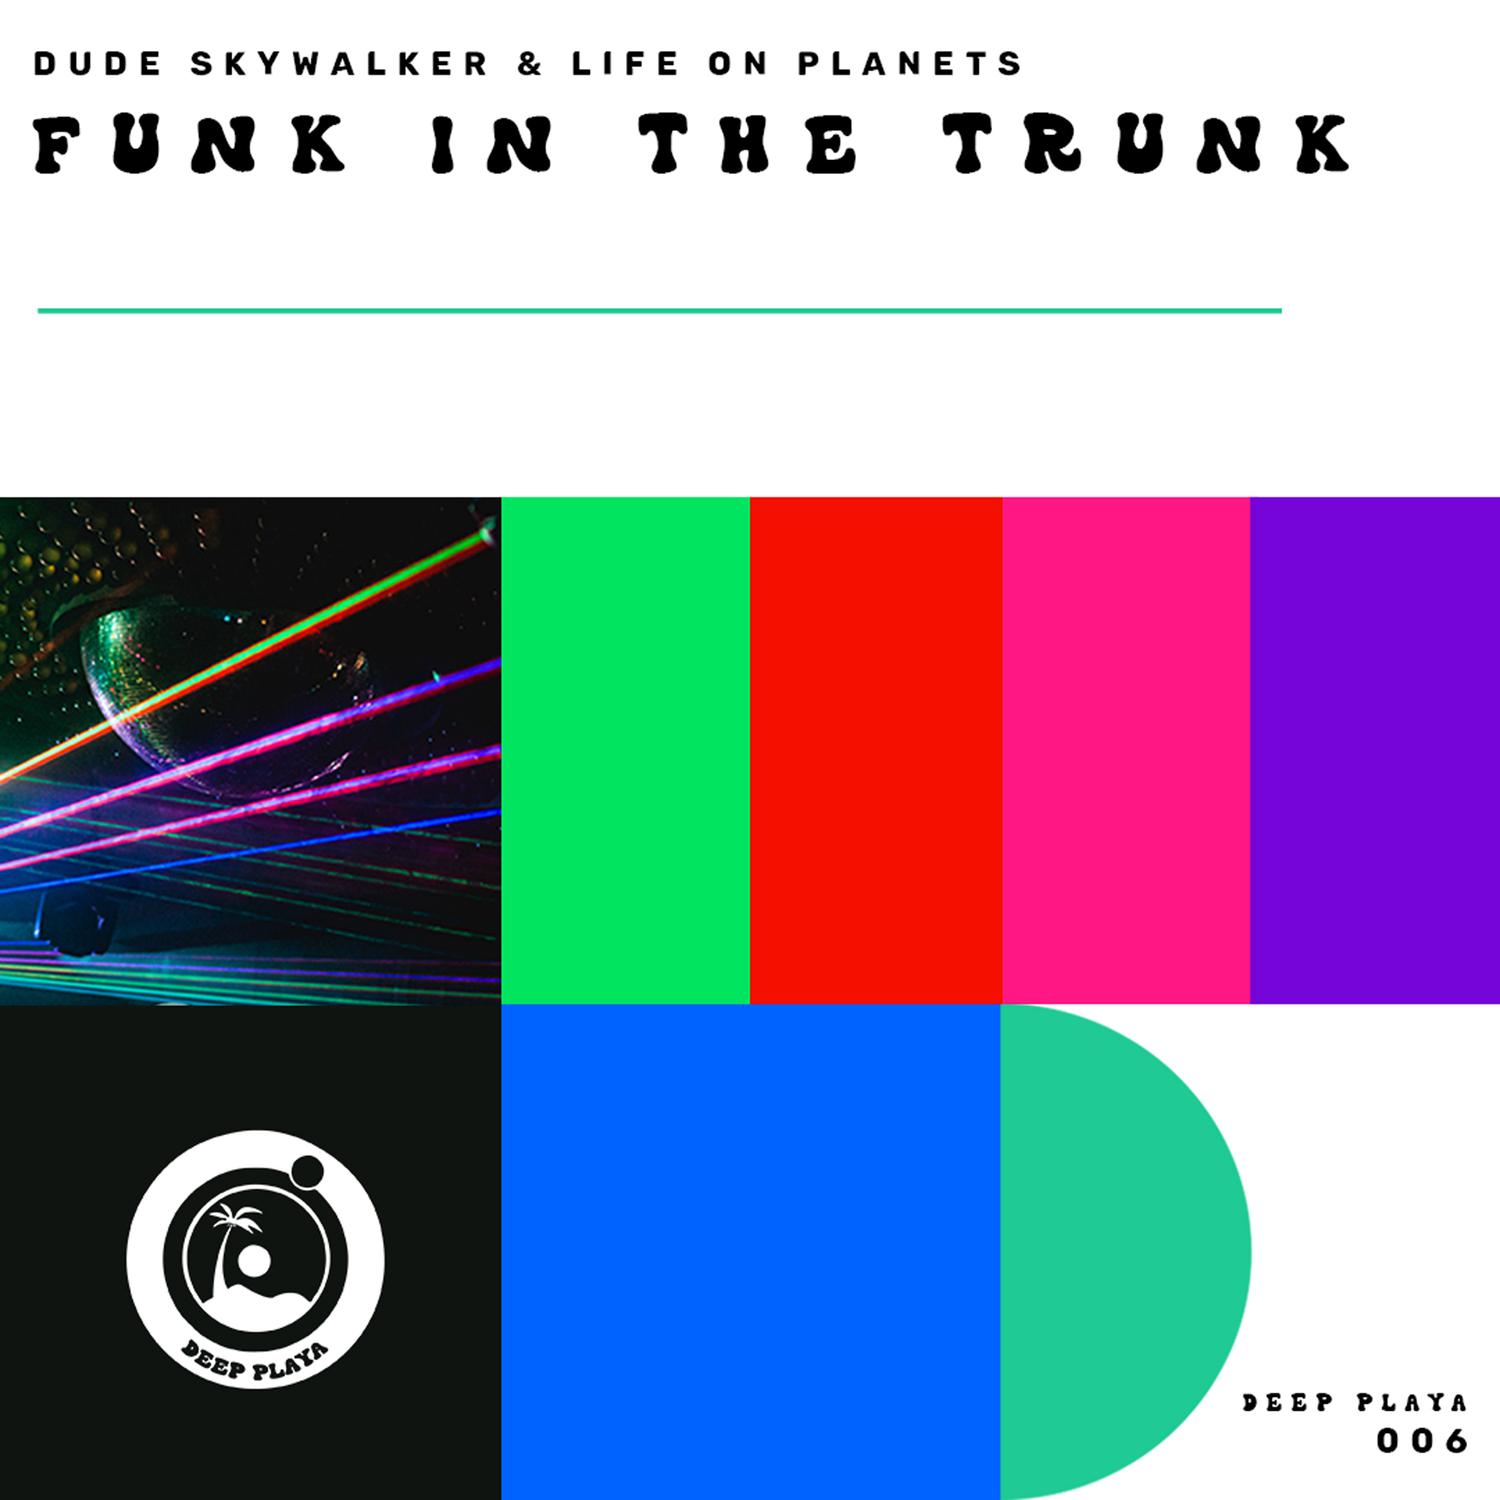 Dude Skywalker - Funk in the Trunk